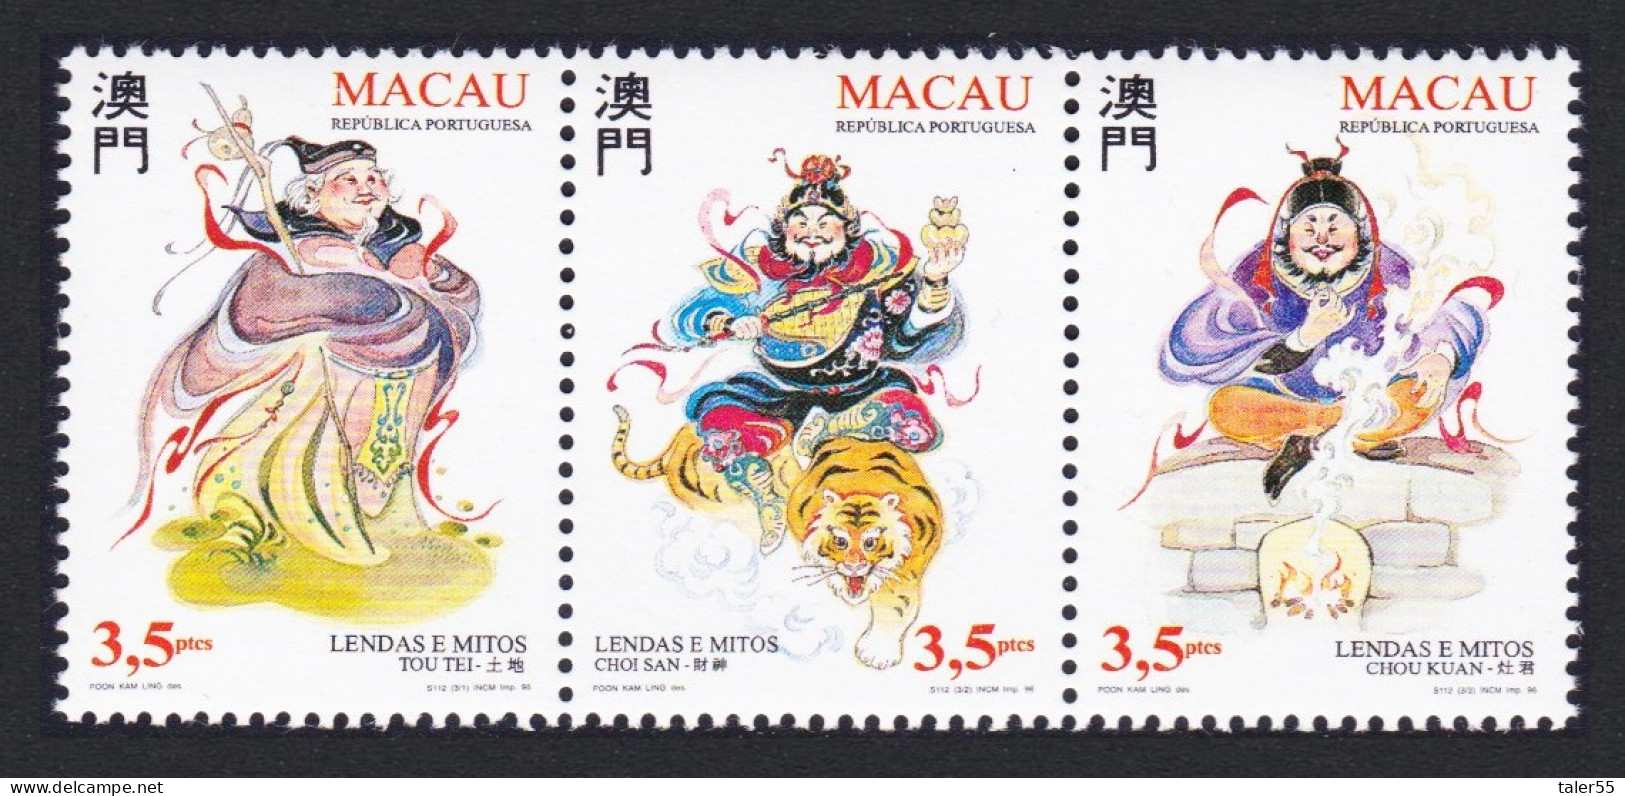 Macao Macau Legends And Myths 3rd Series Strip Of 3v 1996 MNH SG#930-932 Sc#819a - Ongebruikt